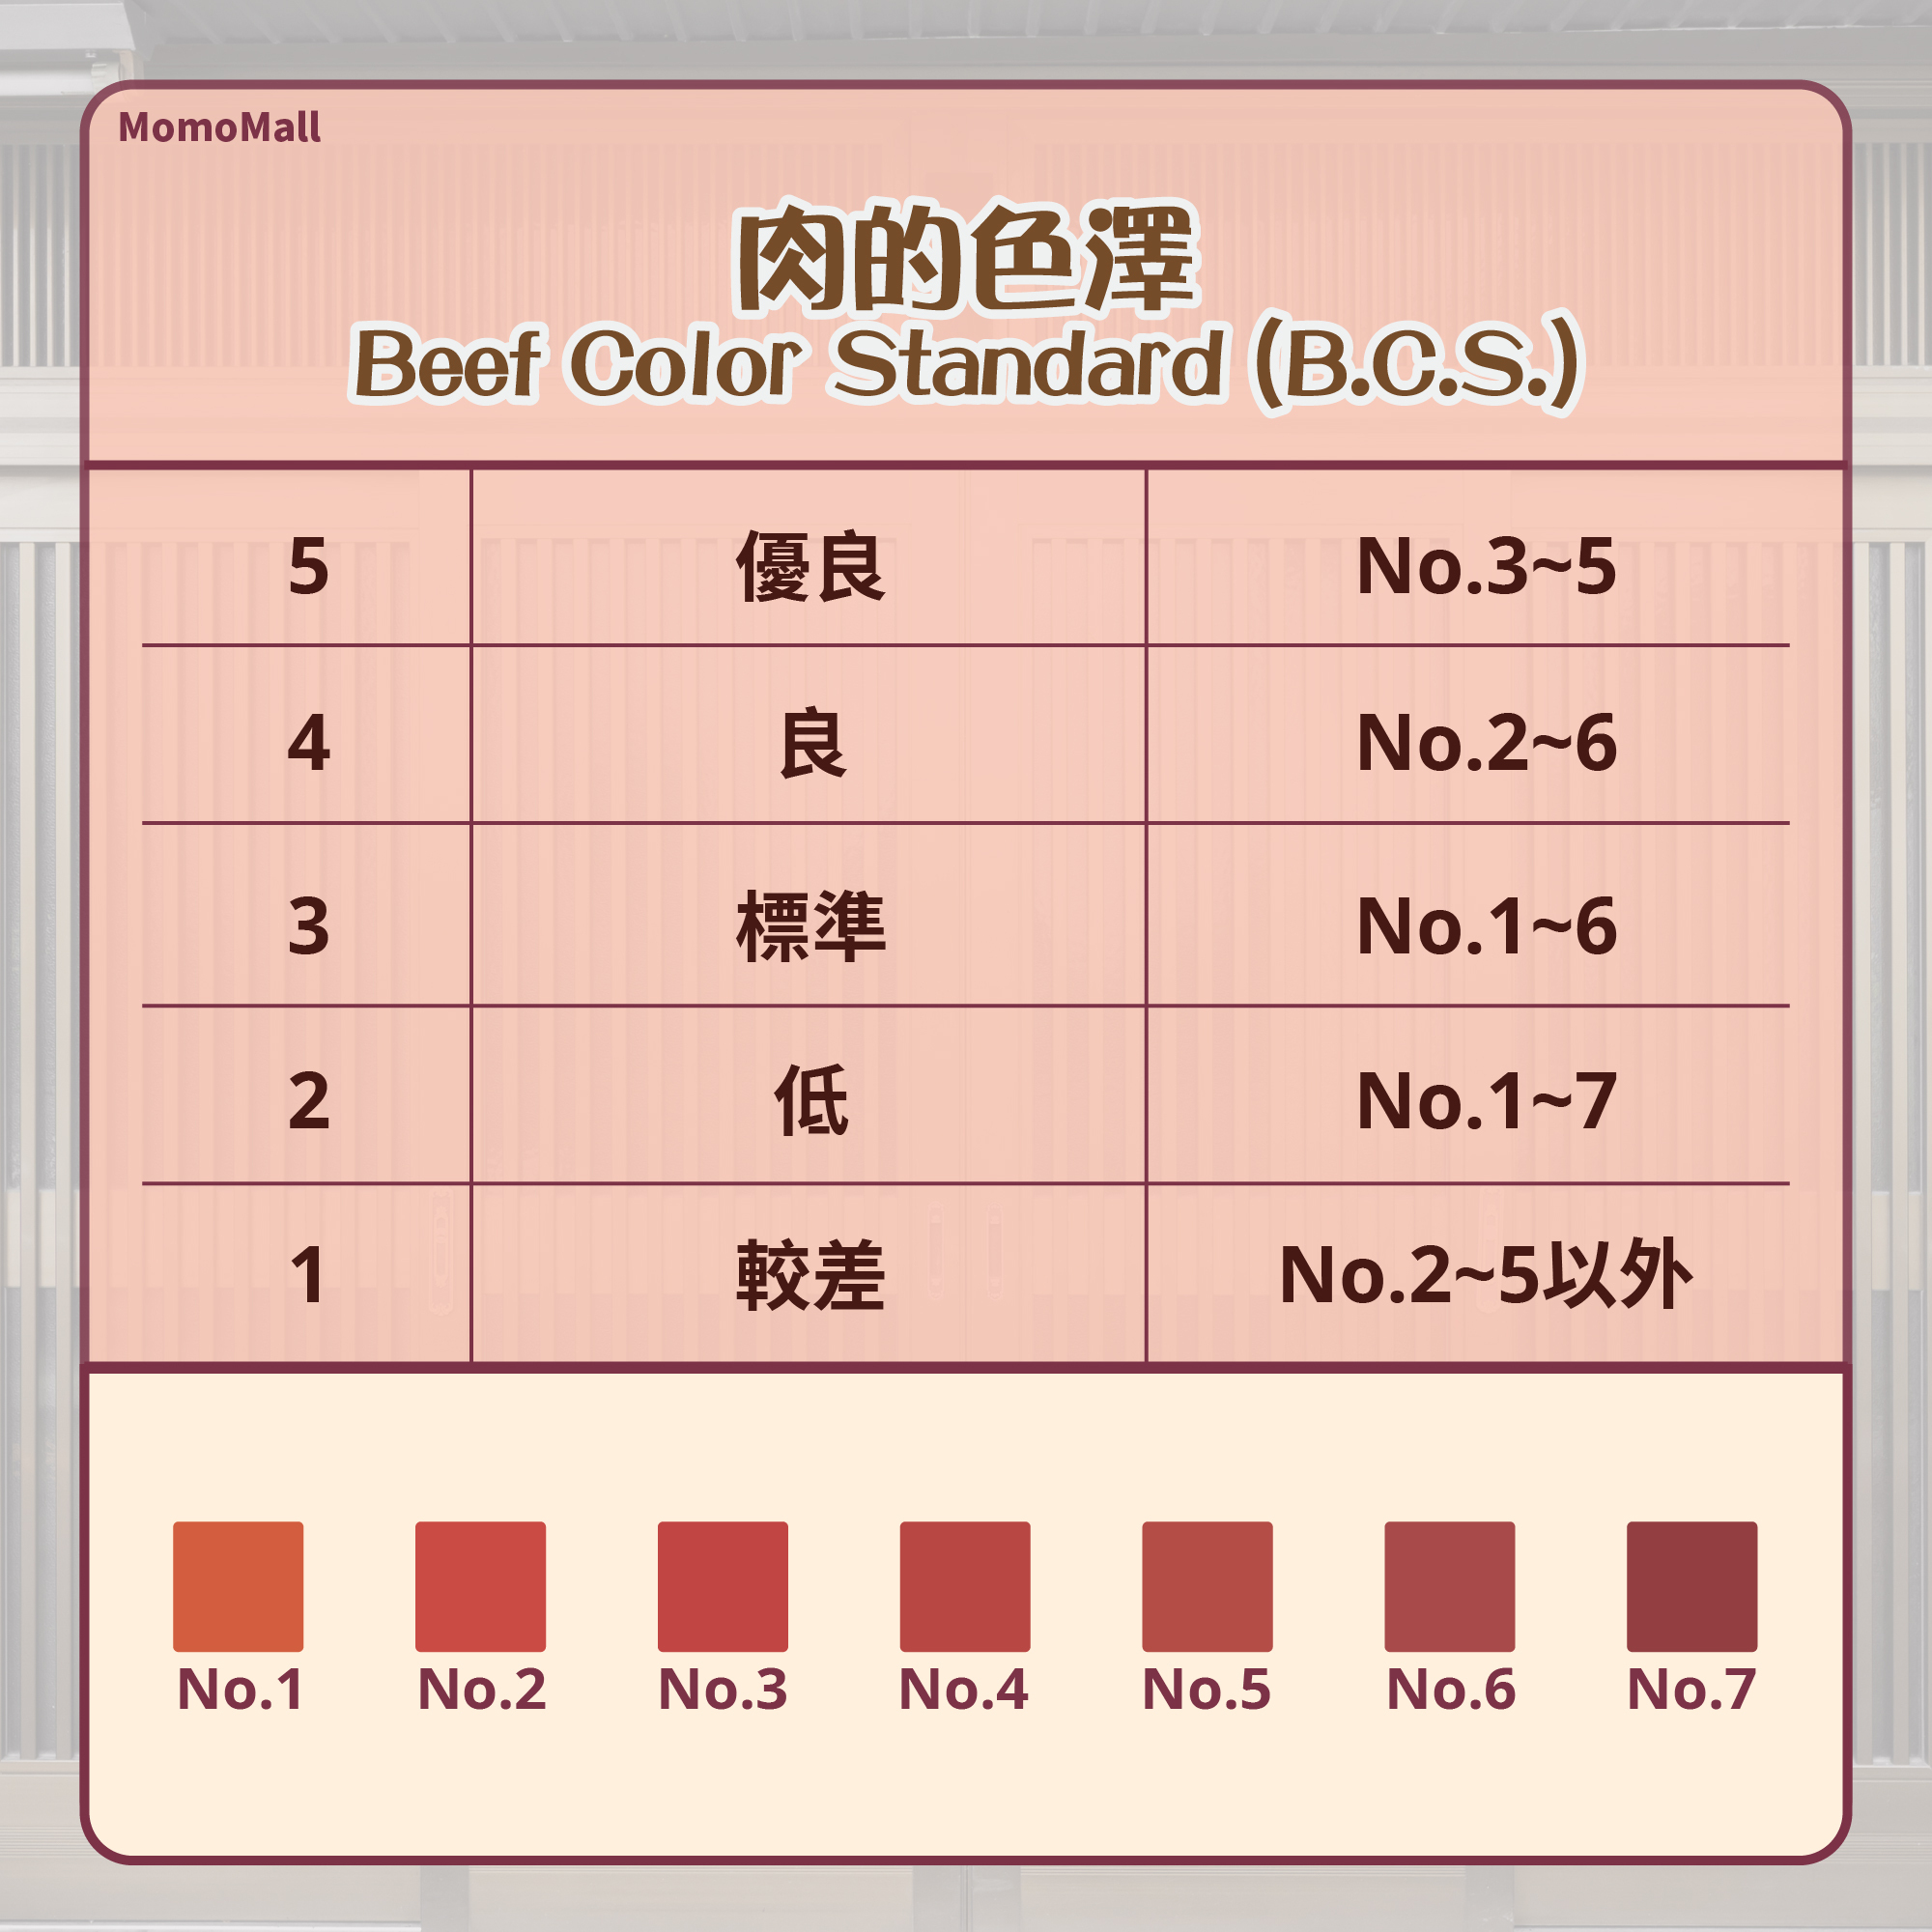 肉的色澤仍為評定日本和牛等級基準之一